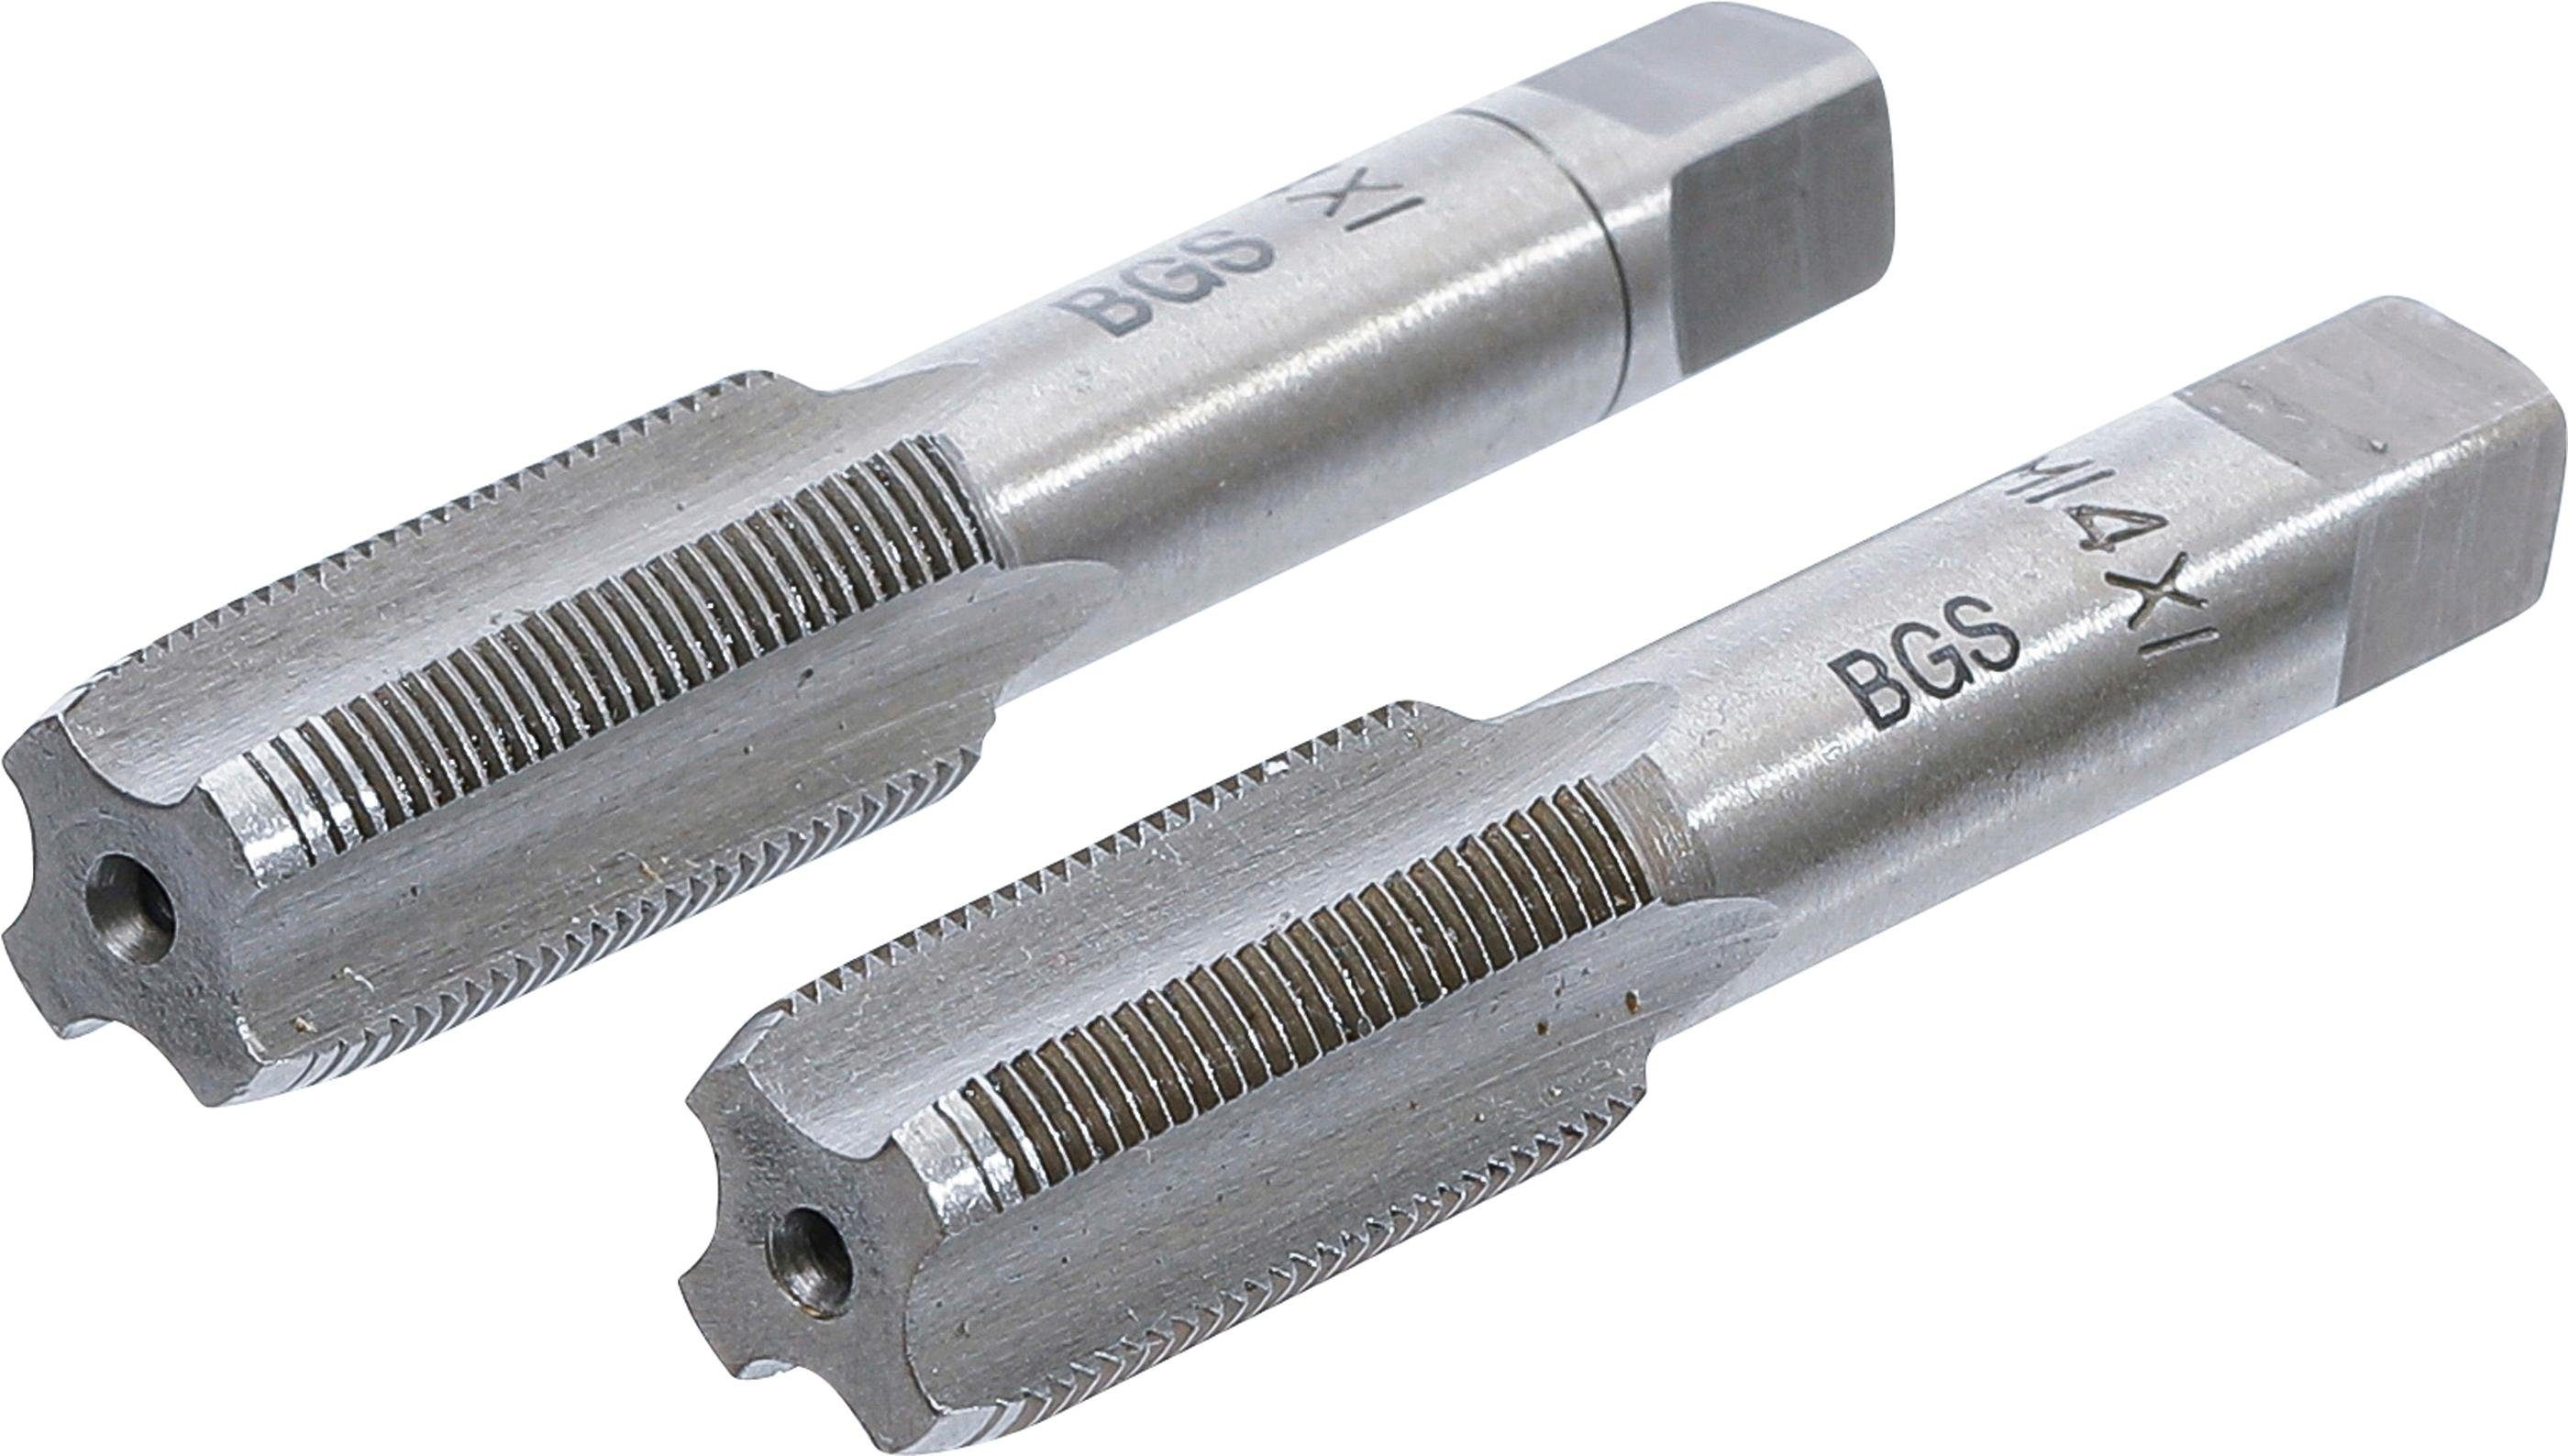 BGS technic Gewindebohrer Gewindebohrer, Vor- und Fertigschneider, M14 x 1,0 mm, 2-tlg.